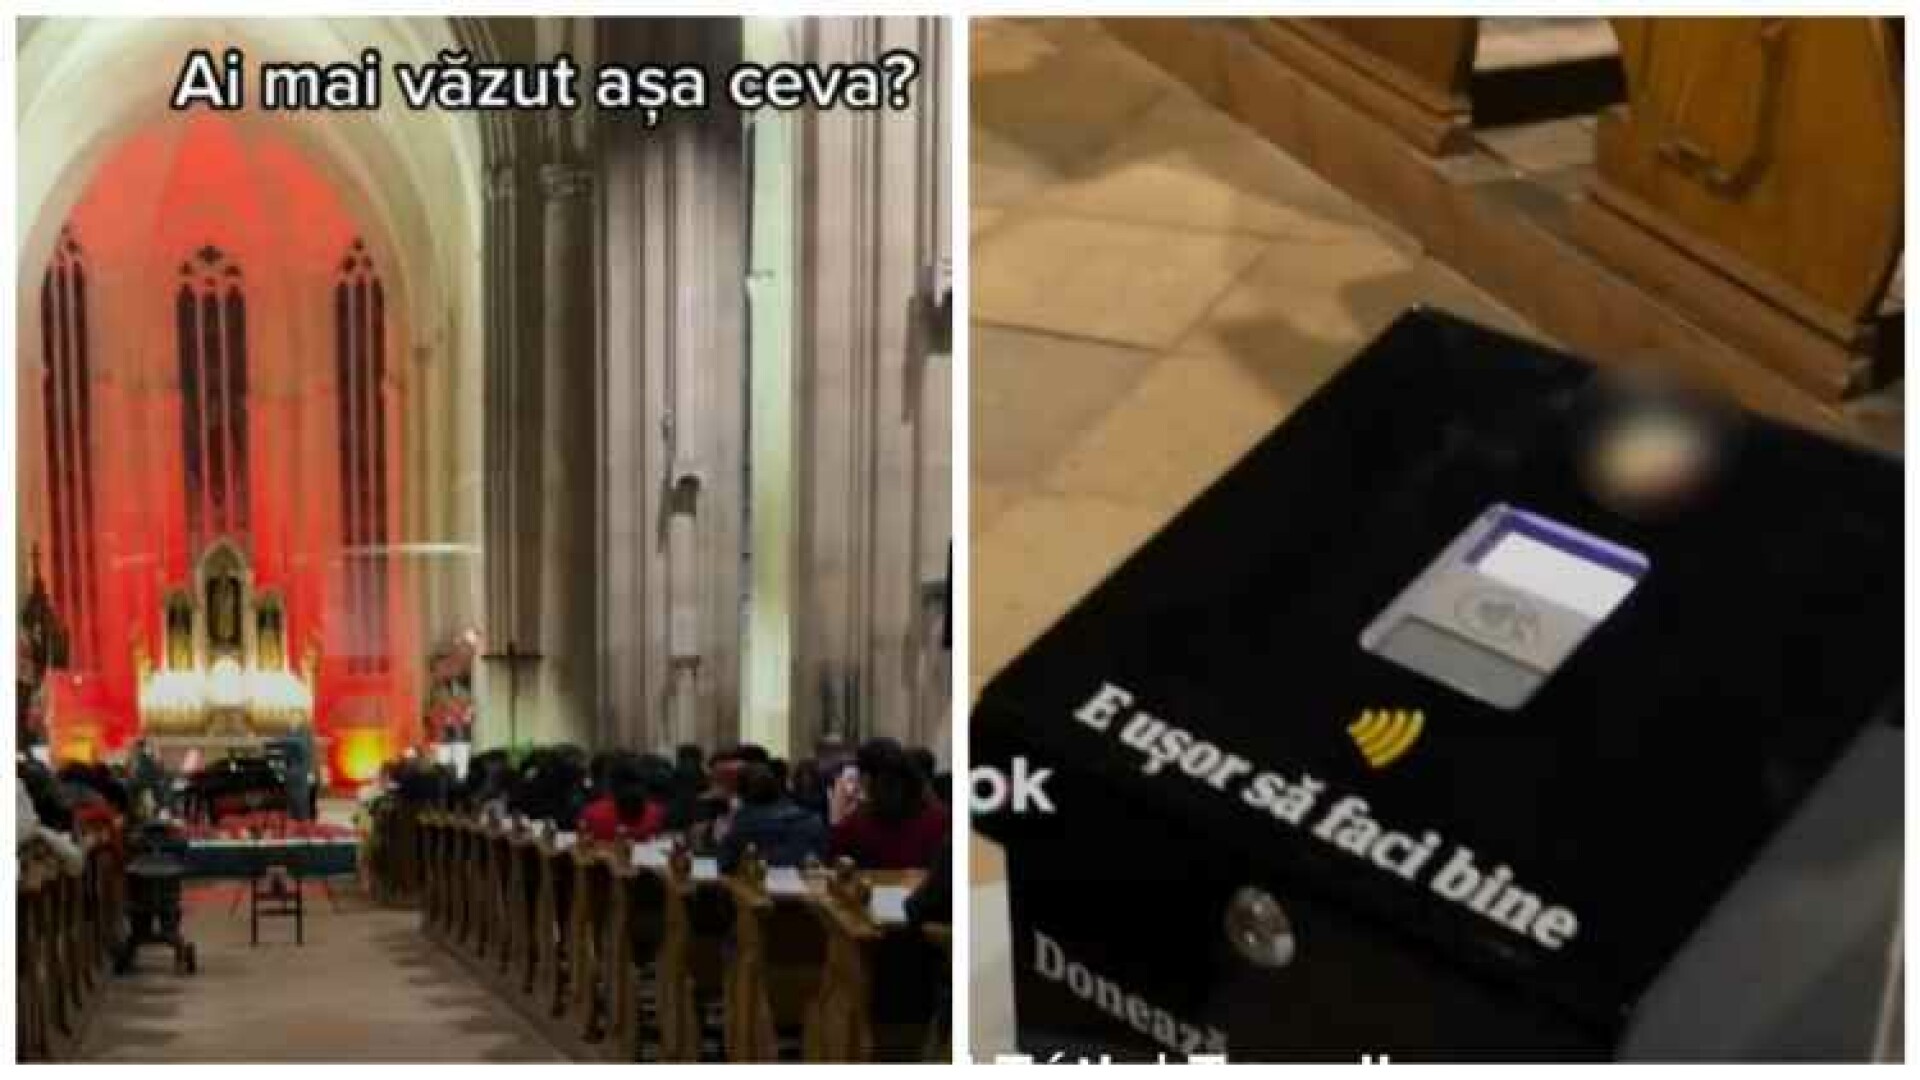 Cutia milei electronică, într-o biserică din Cluj-Napoca. Credincioșii donează contactless, cu telefonul și cardul